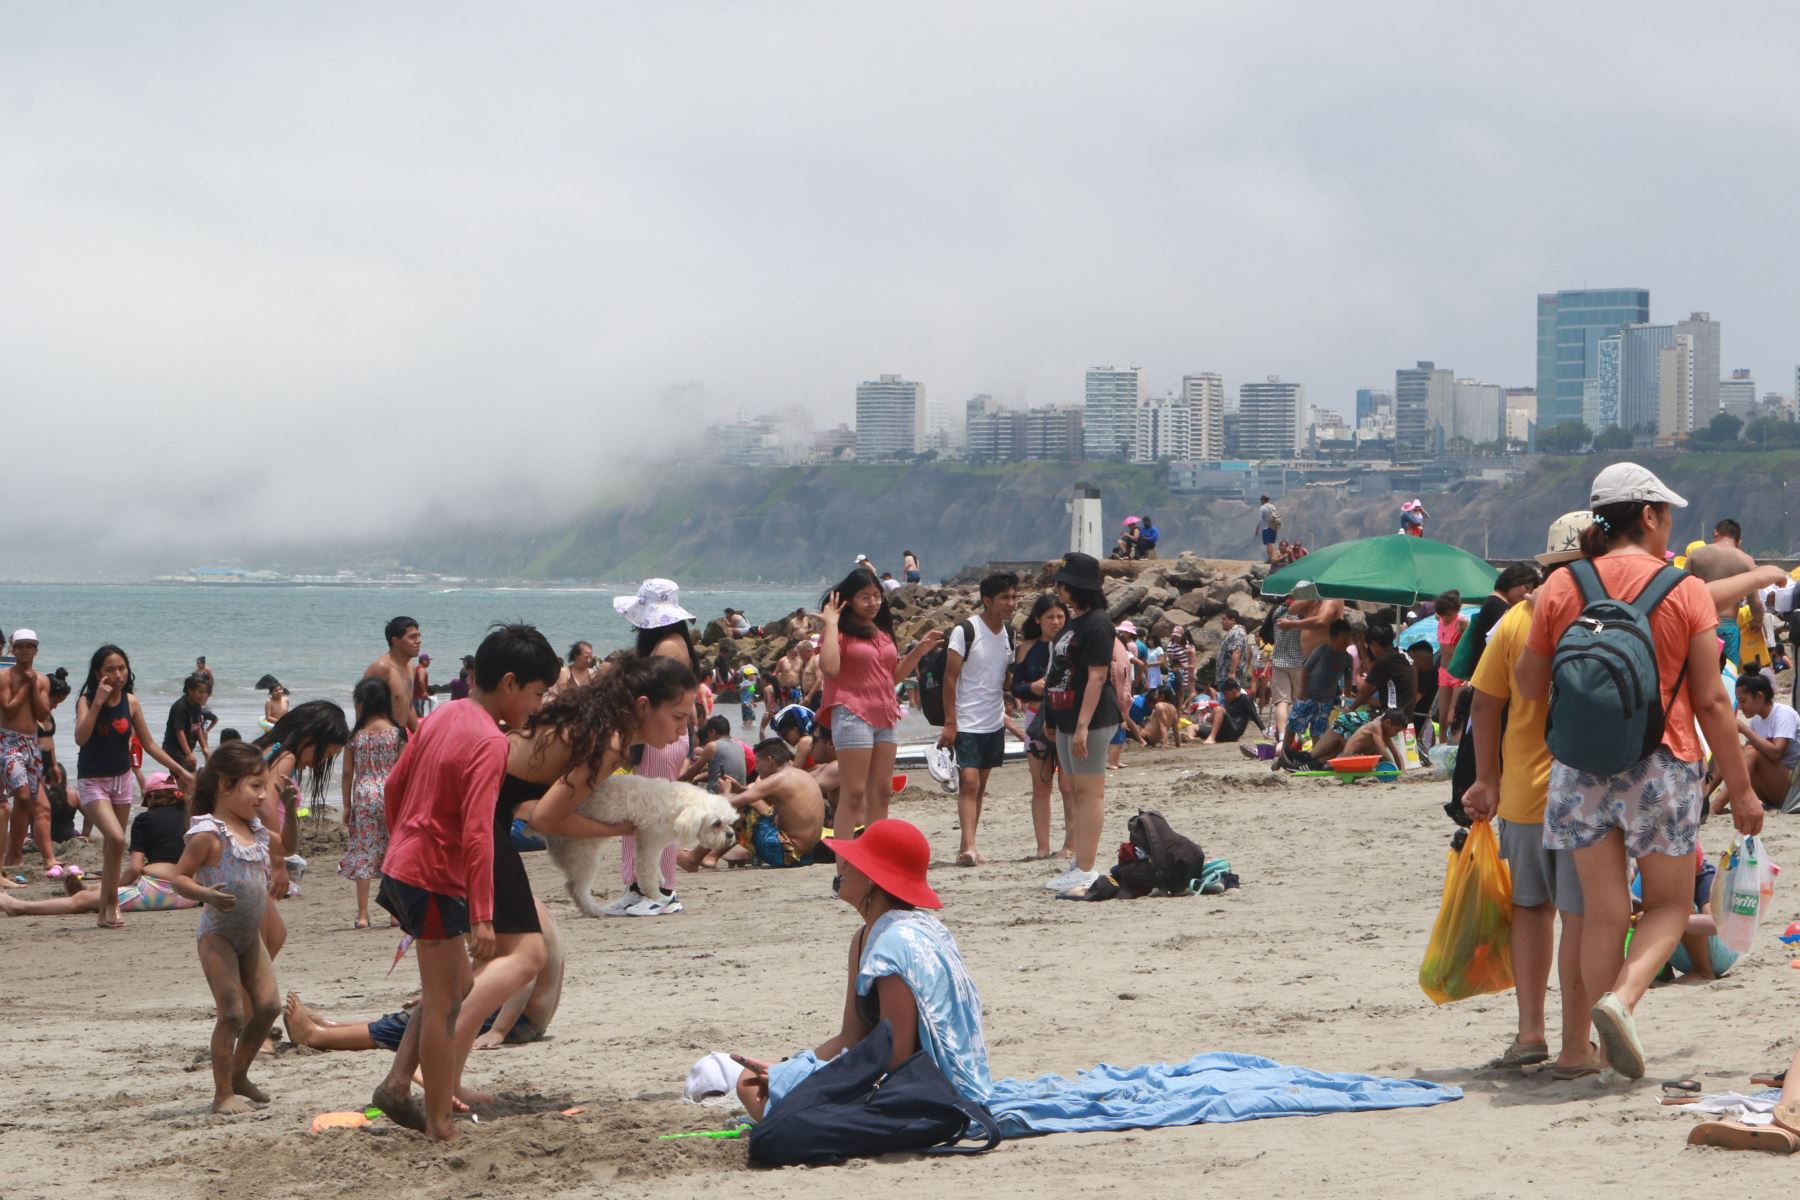 Veraneantes disfrutan de un domingo de playa en la Costa Verde, en el distrito de Chorrillos.
Foto: ANDINA/Héctor Vinces